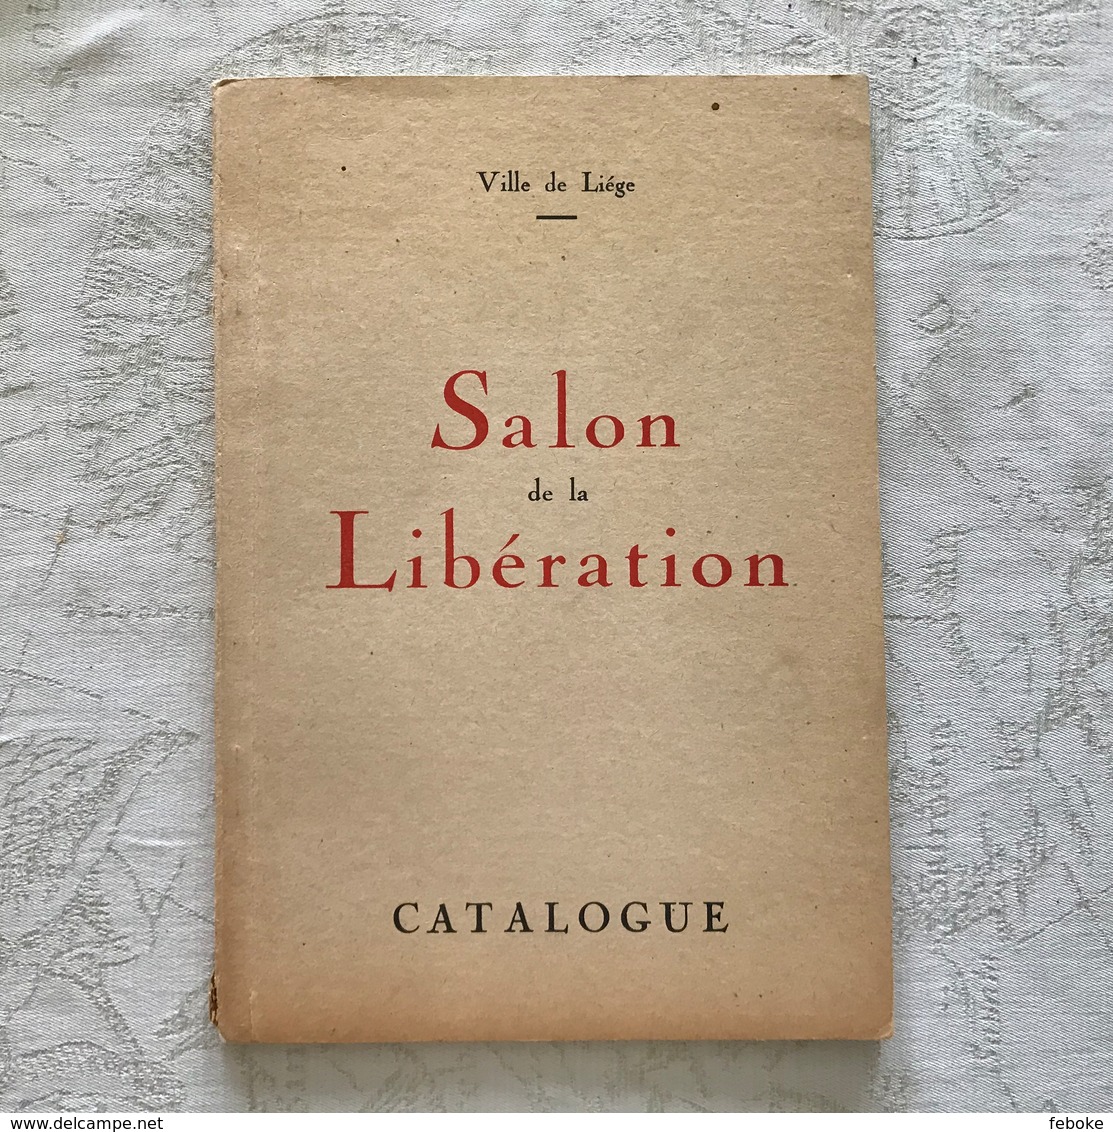 VILLE DE LIEGE SALON DE LA LIBERATION CATALOGUE ( 1946 ) - OCHS, DUPONT, MASSART, SALLE - HOMMAGE A LA RESISTANCE - Arte